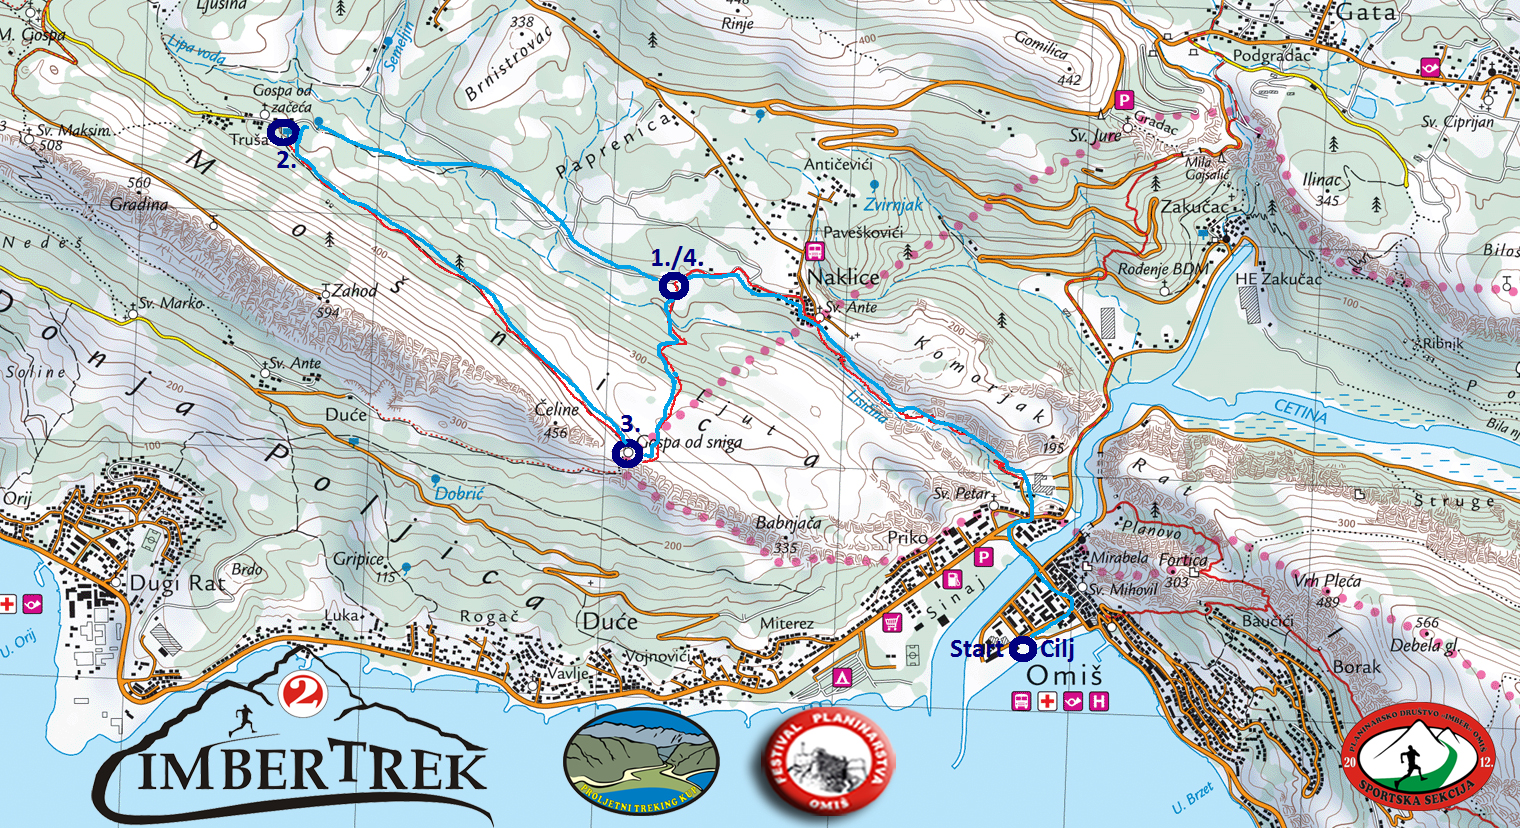 Karta i opis za Rekreativnu 10km